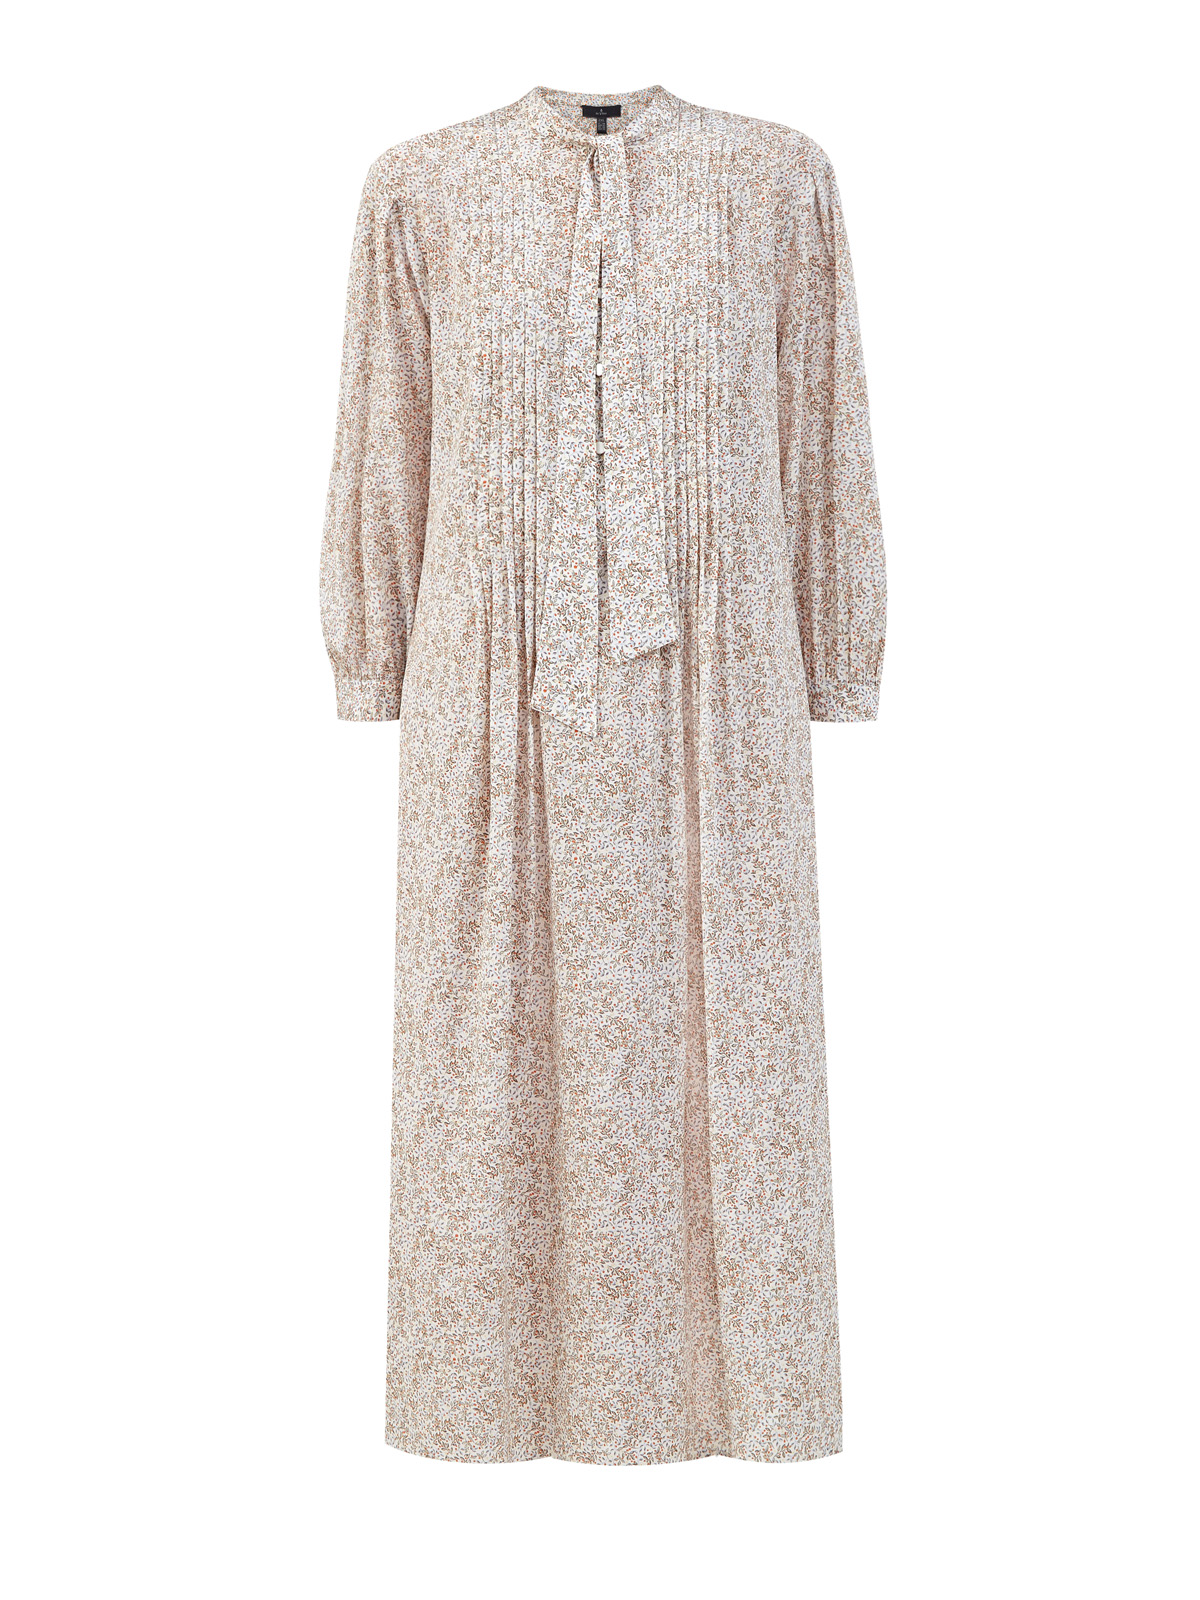 Шелковое платье-рубашка с принтом и лентой в тон RE VERA, цвет бежевый, размер 3XL;2XL - фото 1